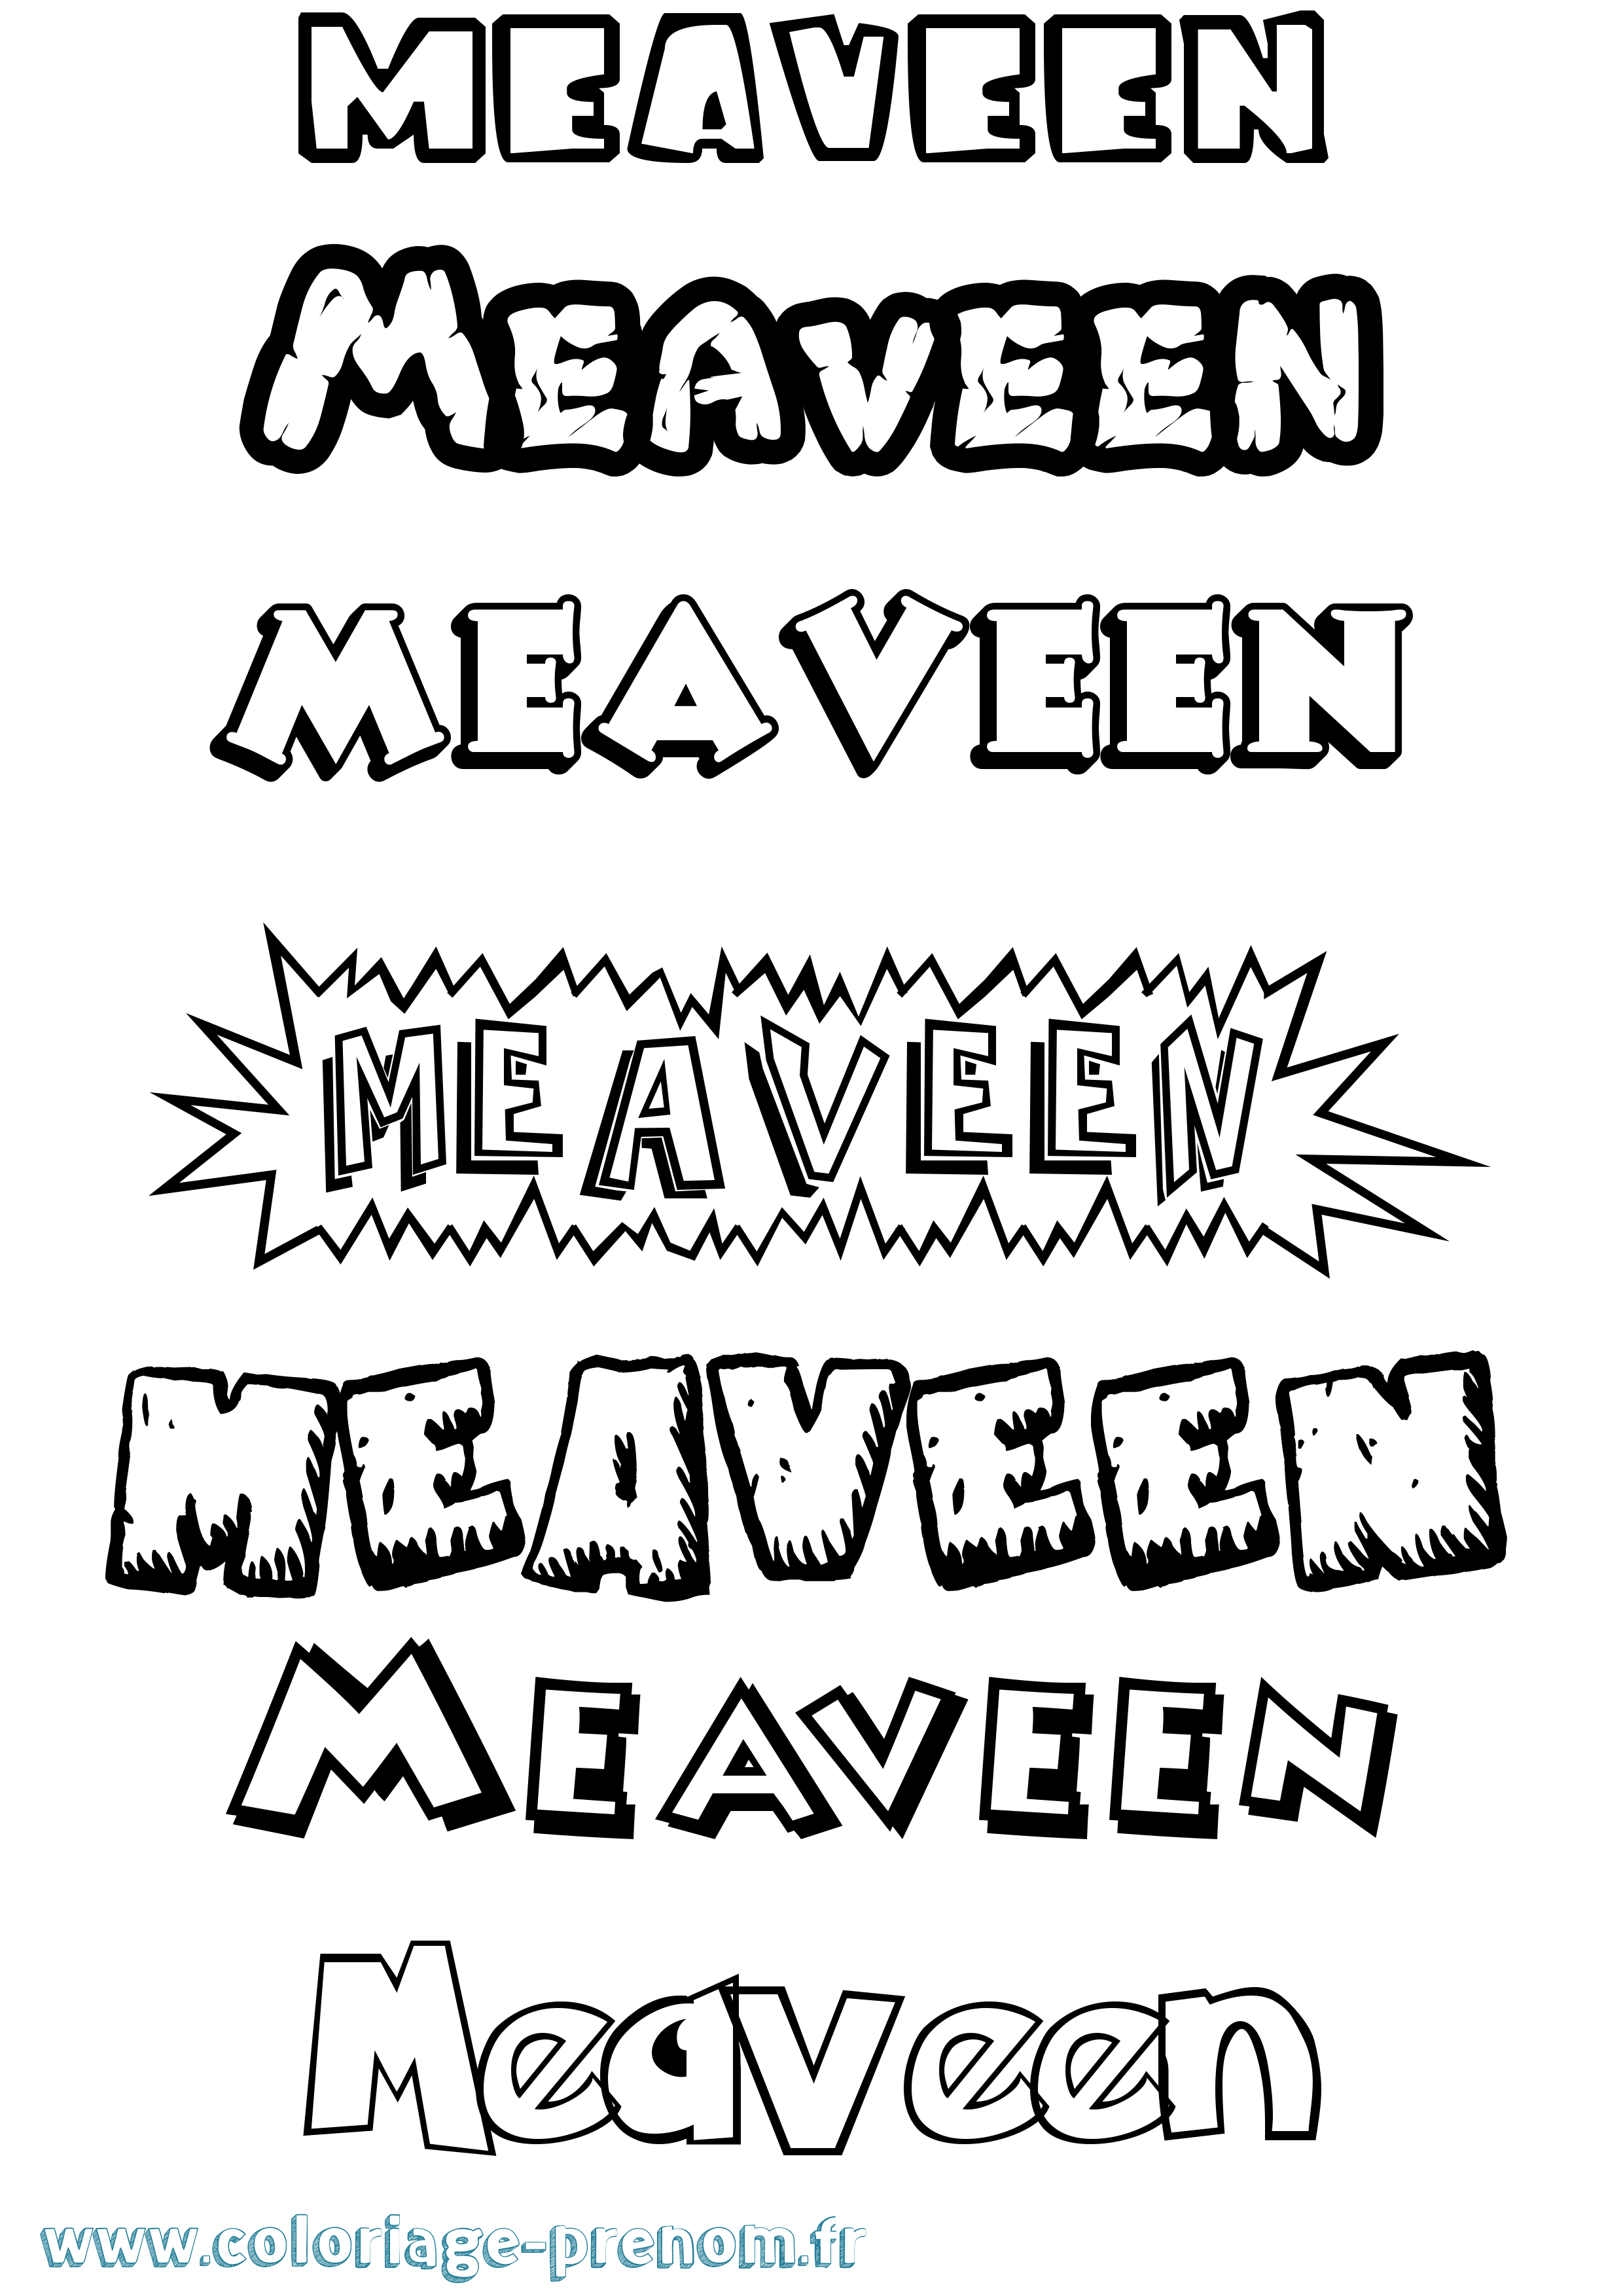 Coloriage prénom Meaveen Dessin Animé